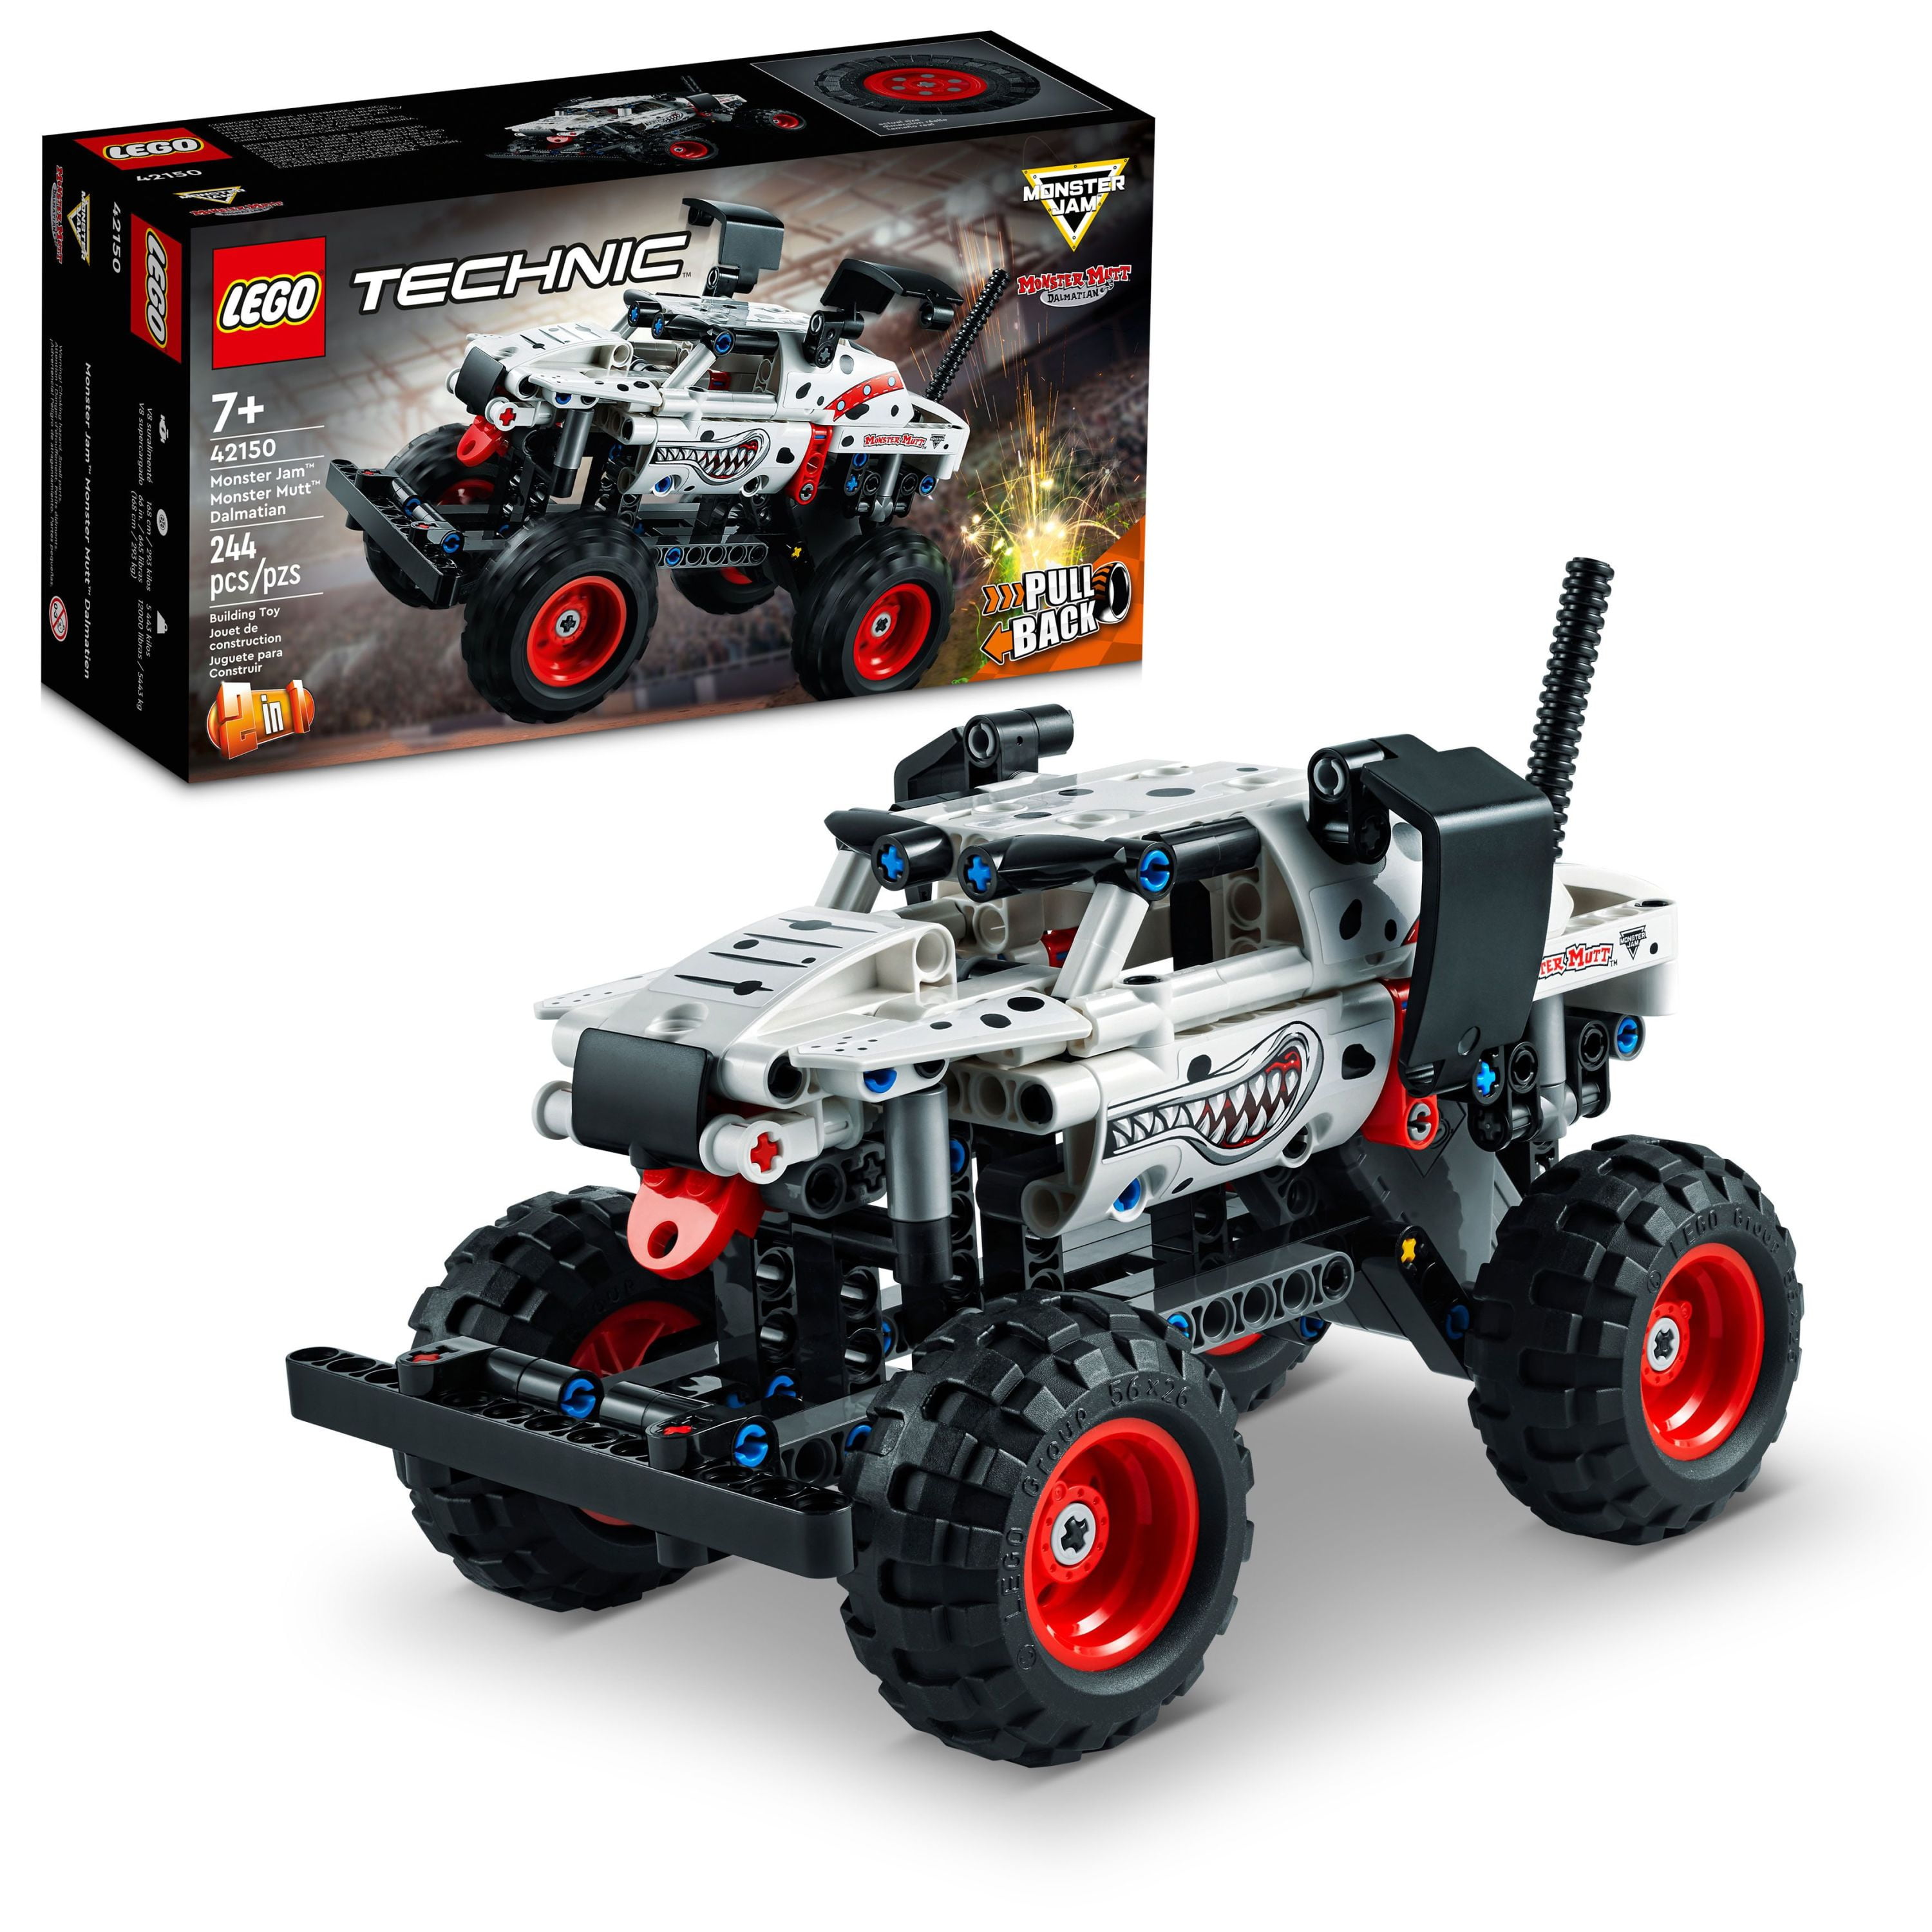 mørke Nævne munching LEGO Technic Monster Jam Monster Mutt Dalmatian Set 42150 - Walmart.com